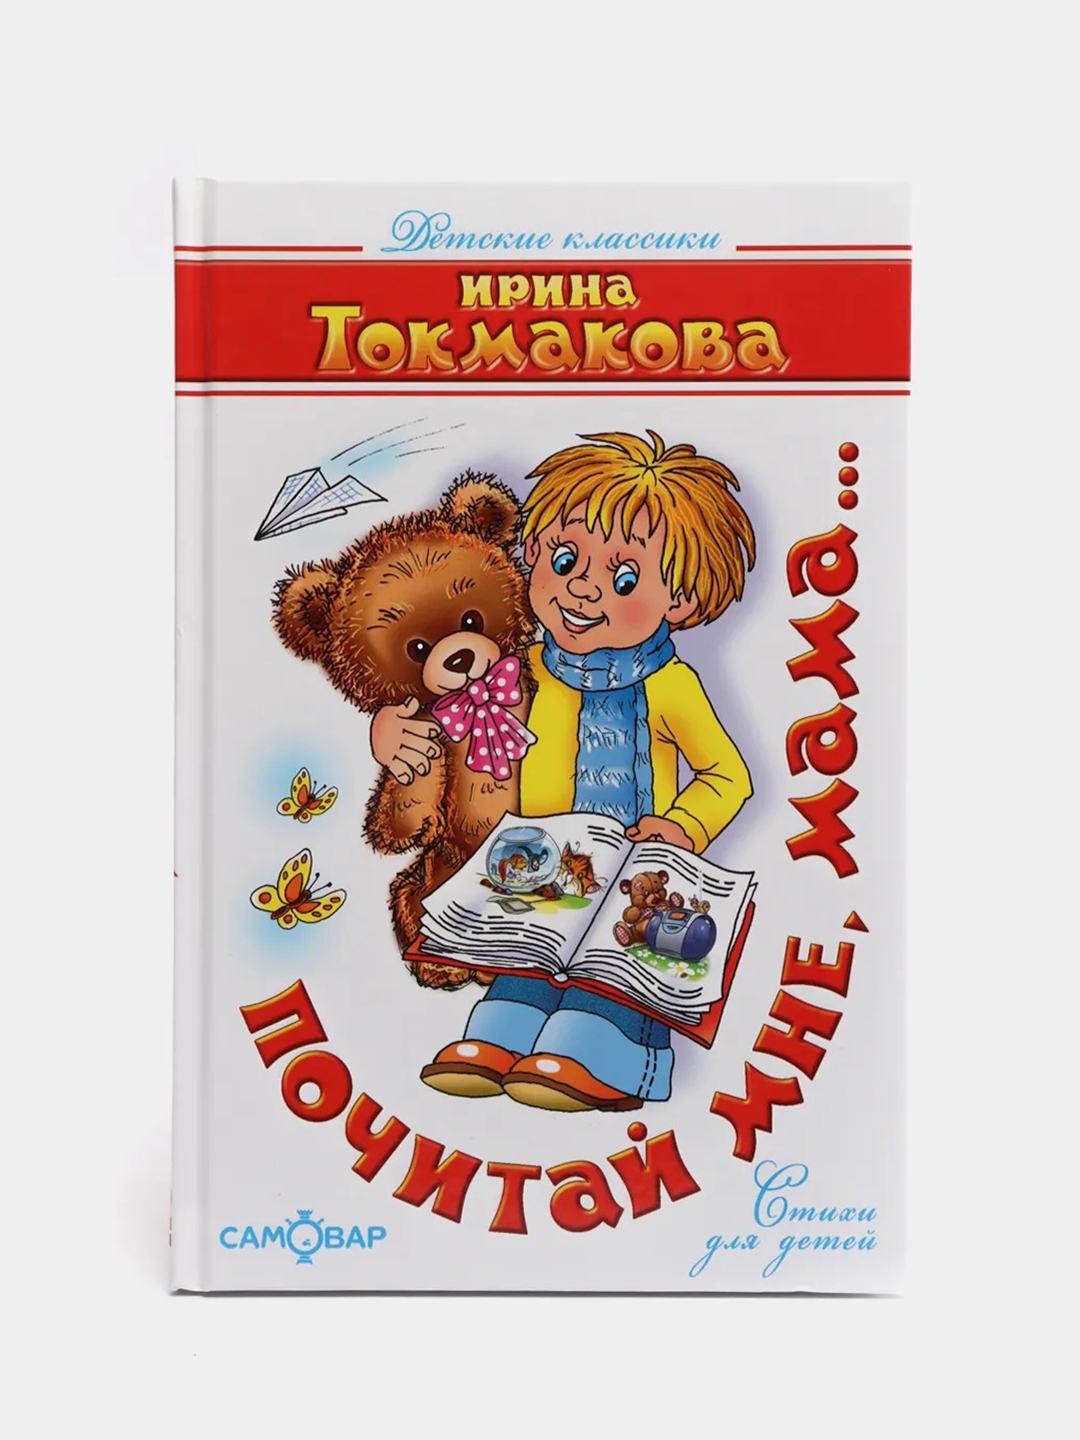 Книги Токмаковой для детей. Обложка книги для детей стихи и рассказы о маме.